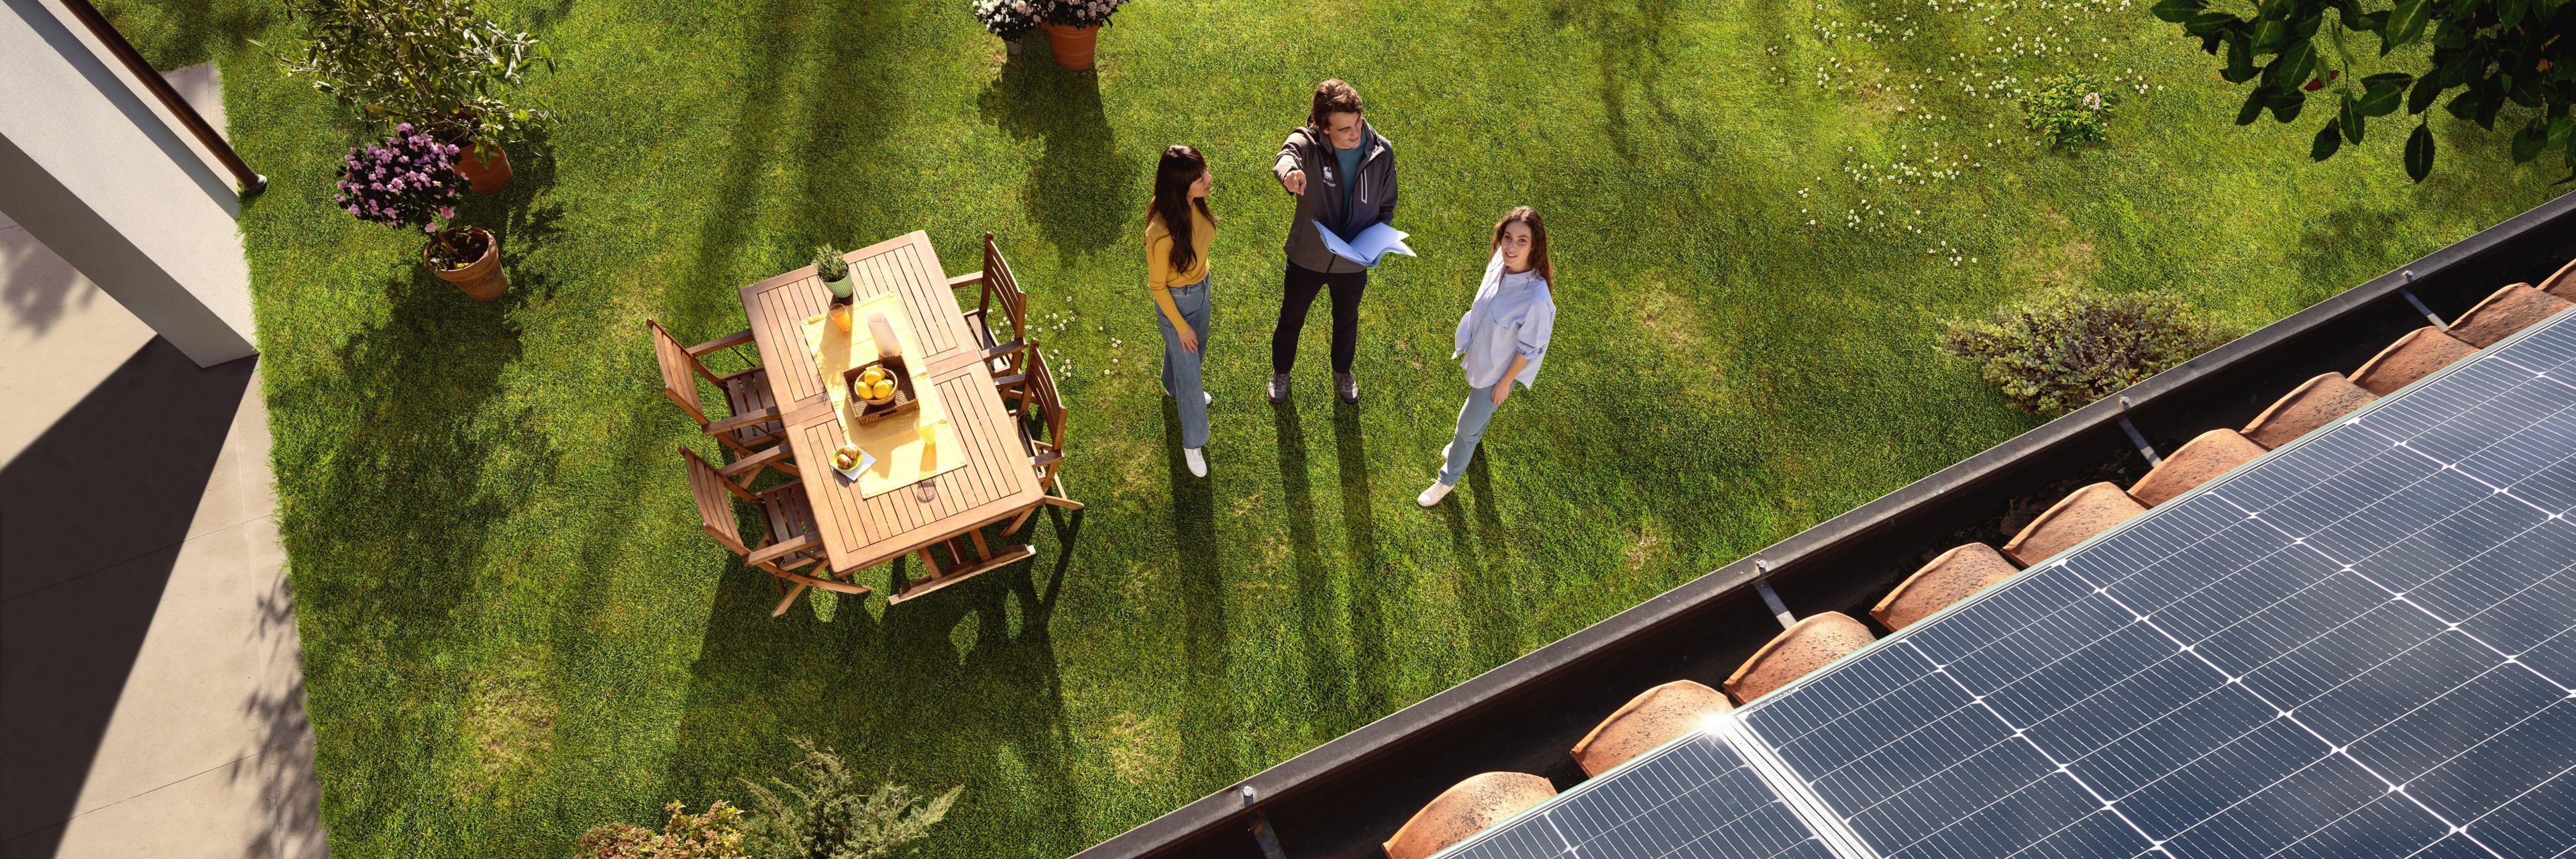 Tre persone che indicano dei pannelli solari sul tetto